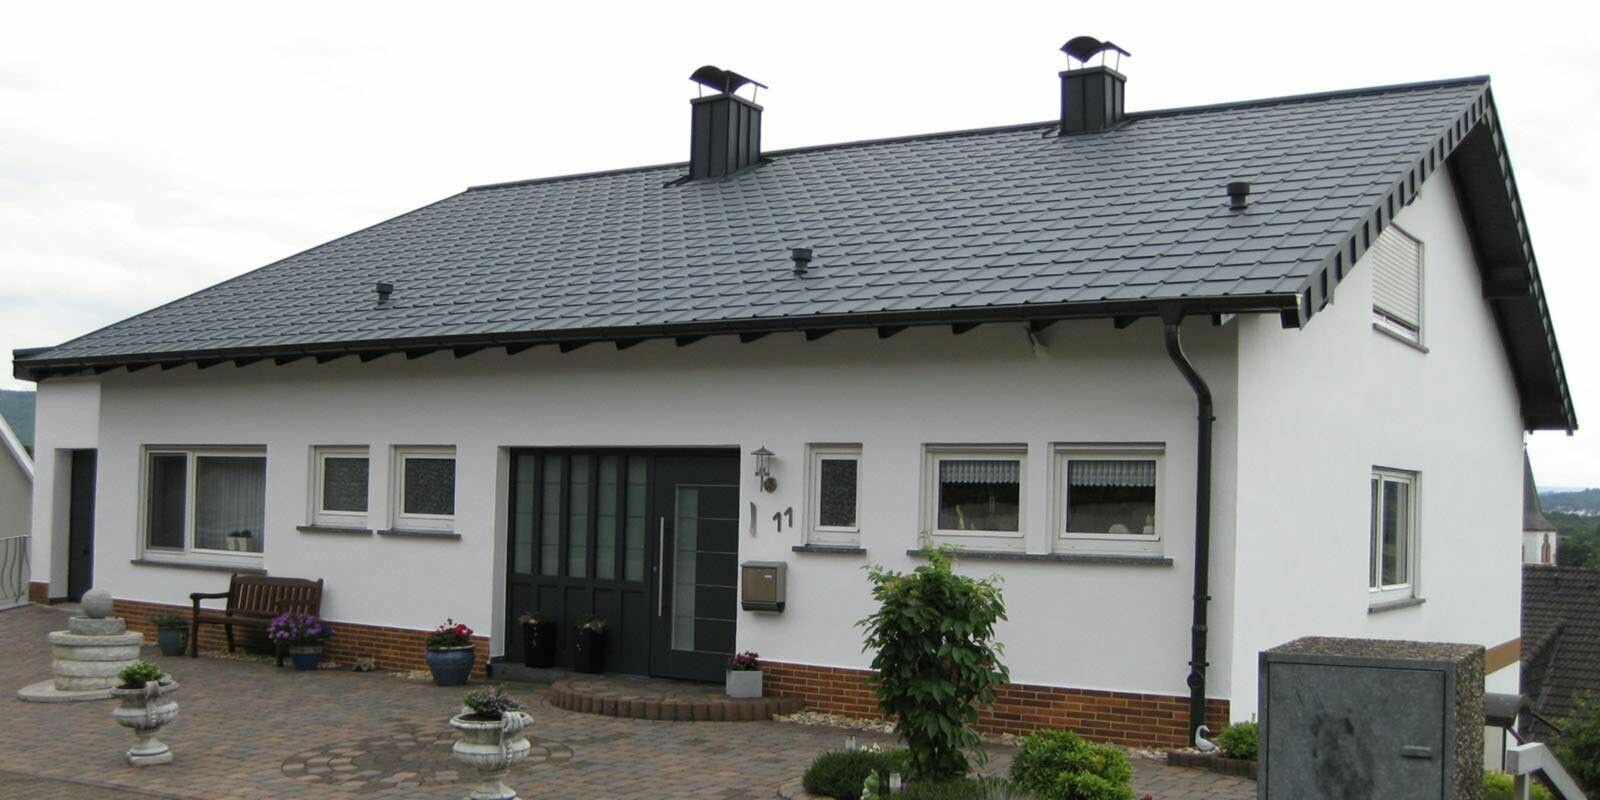 Maison individuelle avec toit à deux pans simple, après la rénovation de toiture à l’aide de tuiles PREFA